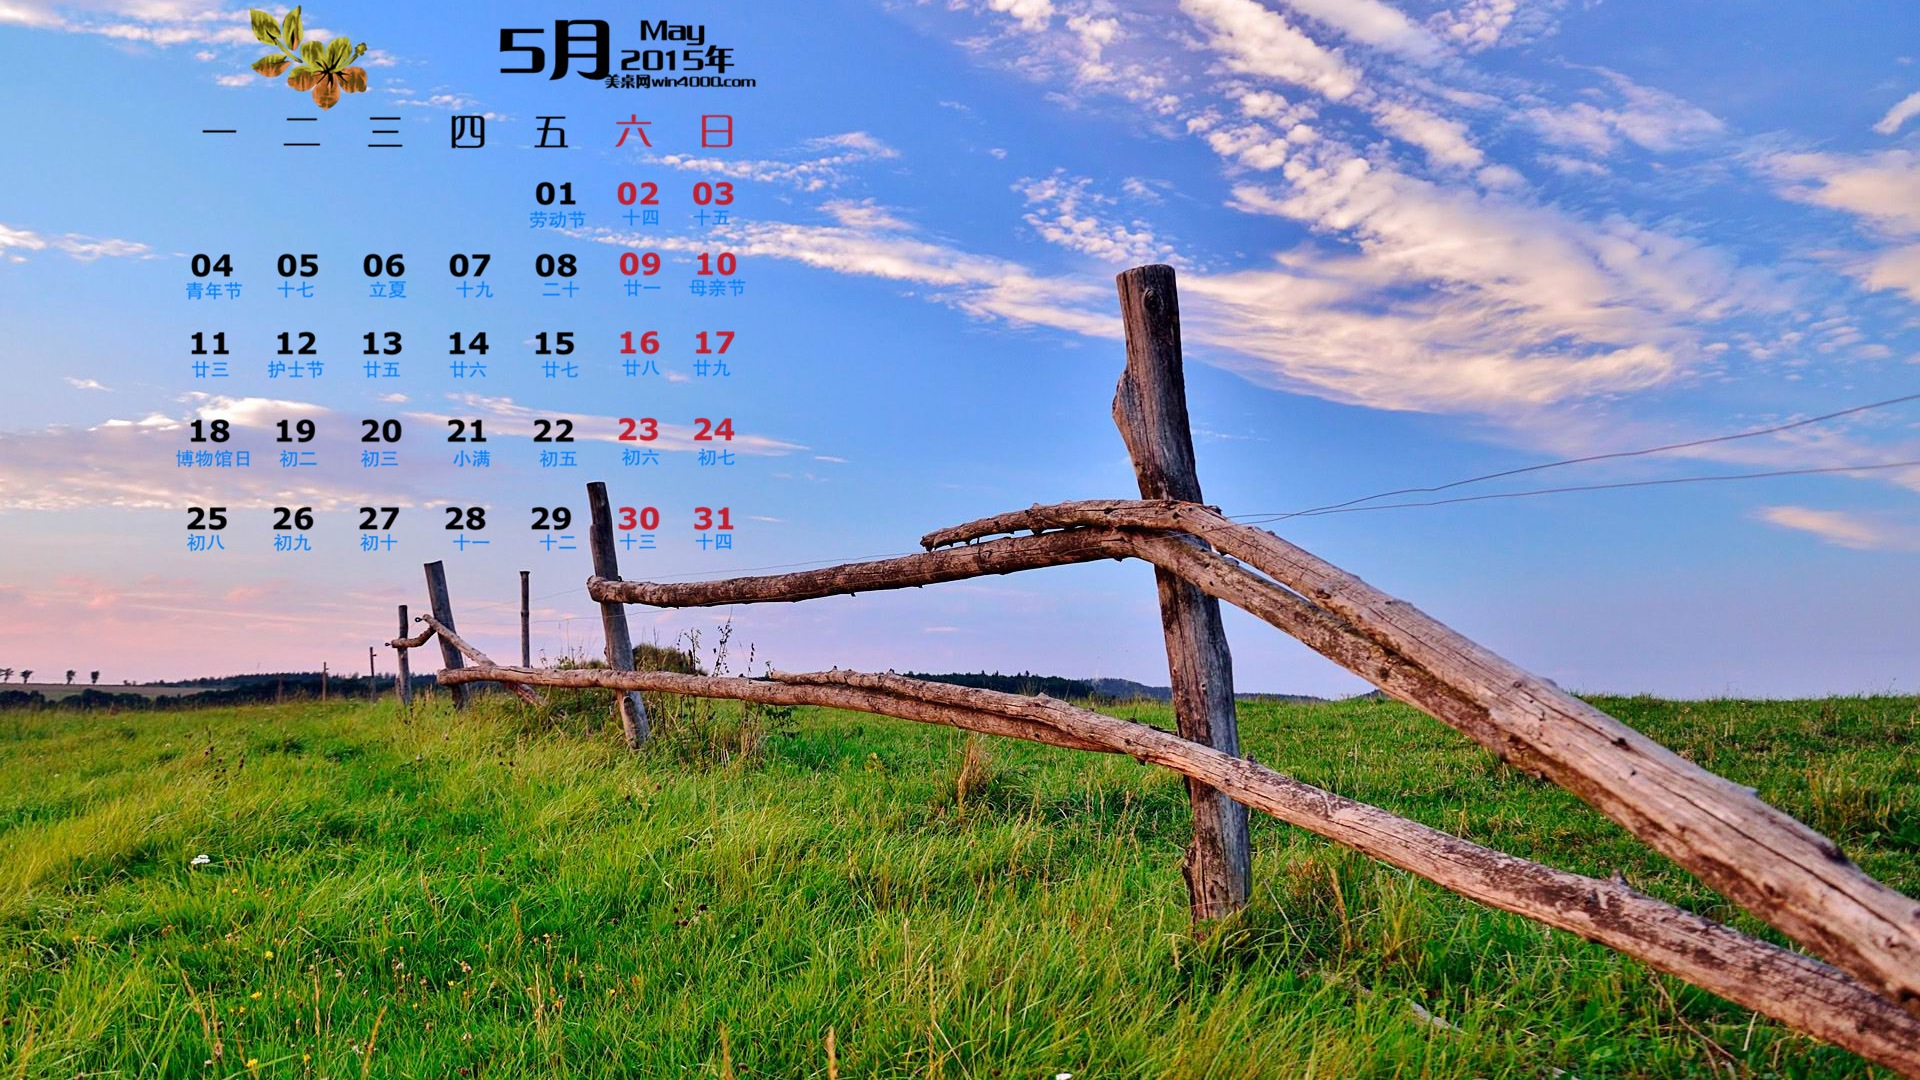 Май 2015 календарный обои (1) #9 - 1920x1080